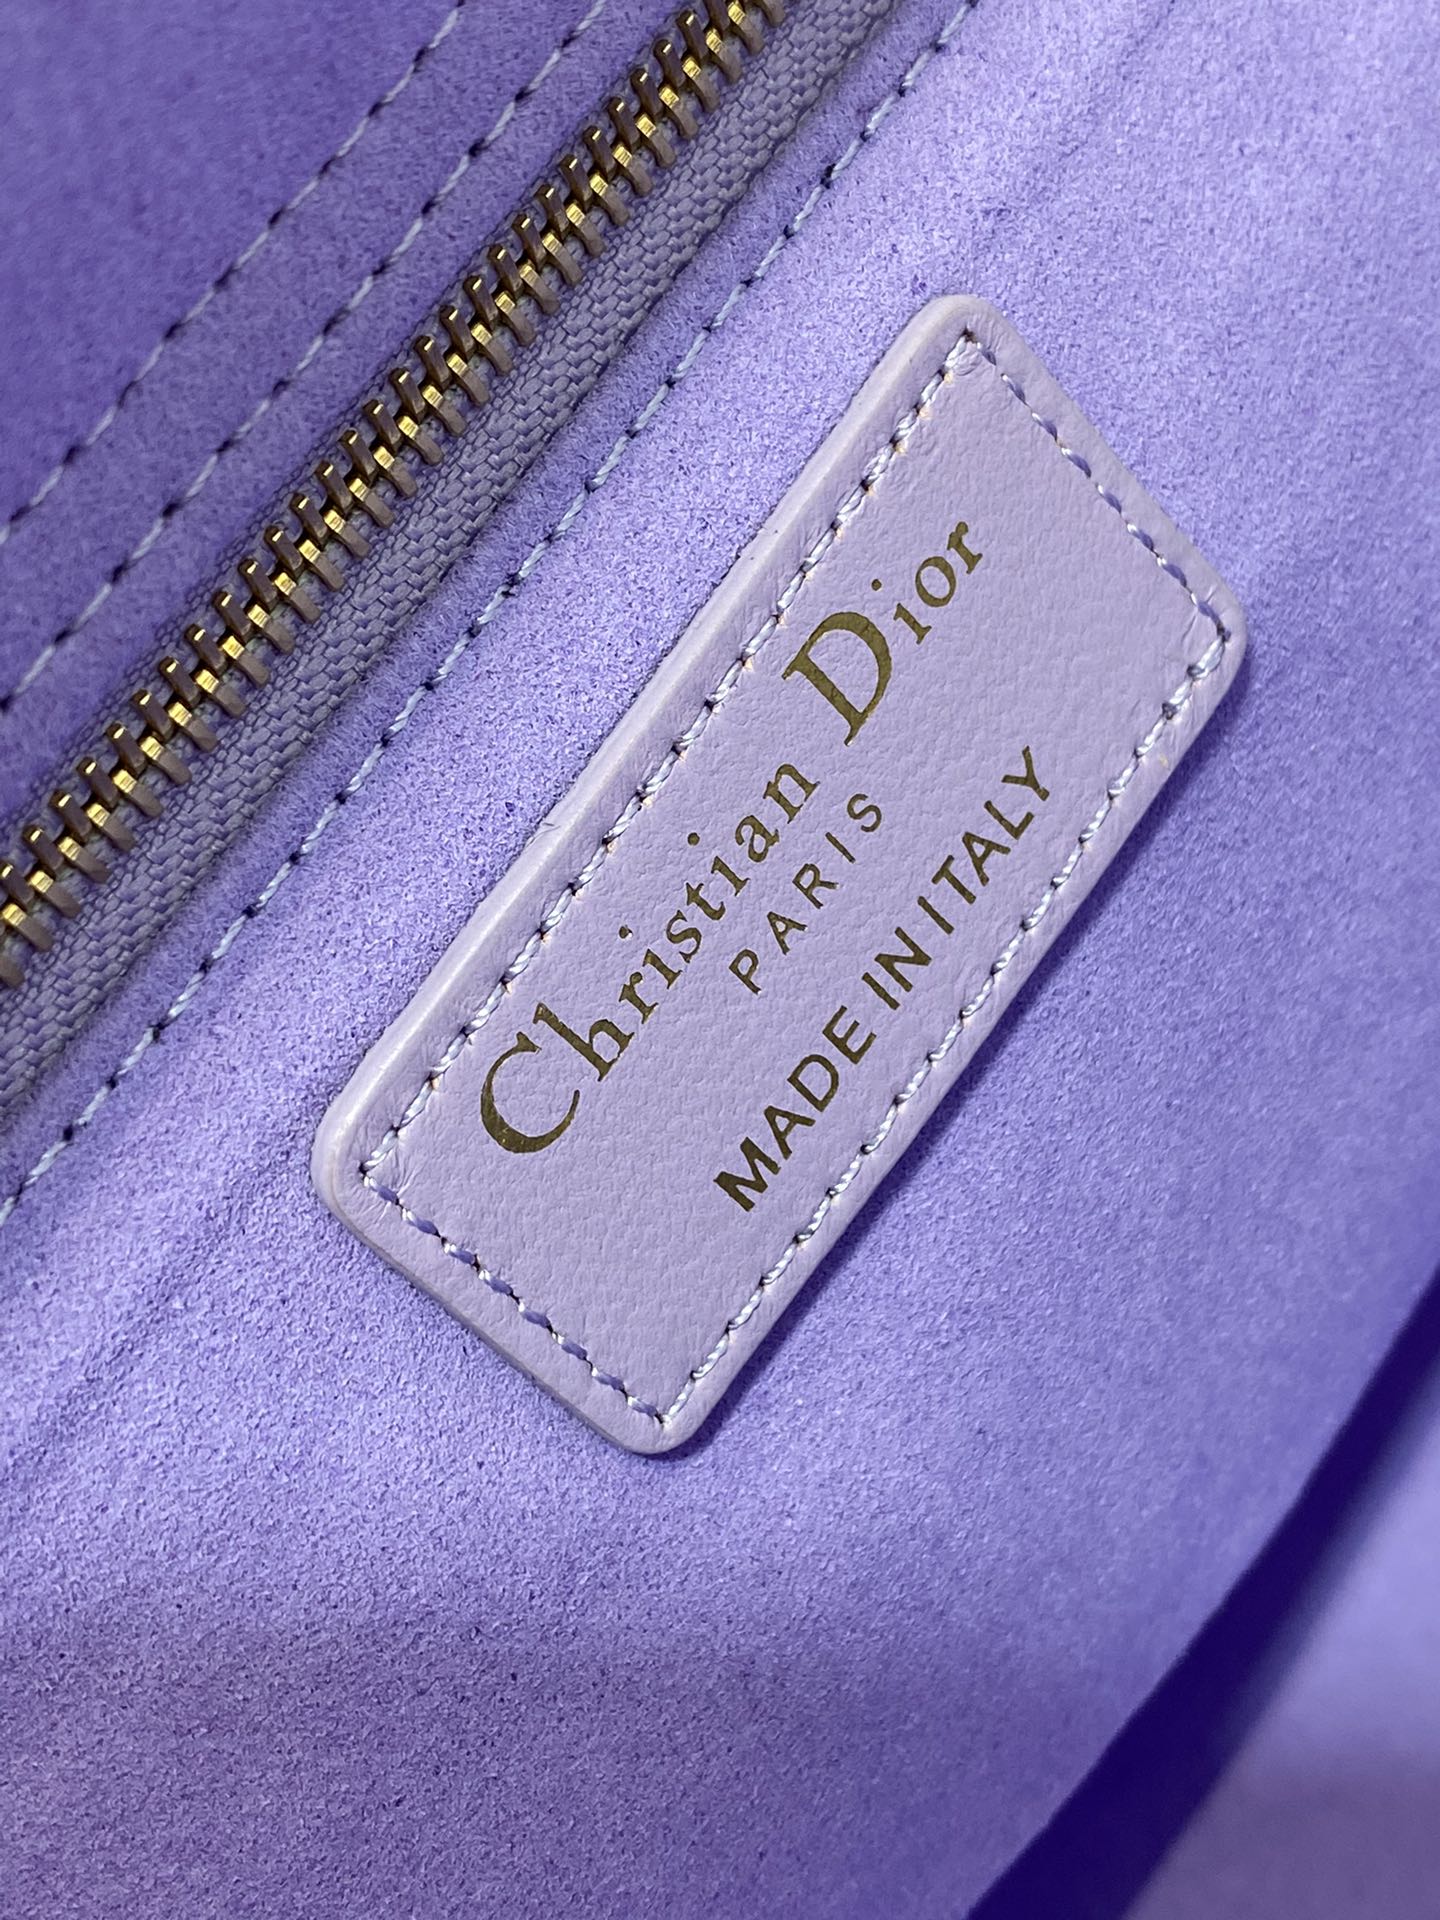 迪奥Dior顶级进口原厂羊皮戴妃包梦幻紫现货️原厂皮配羊筋绒内里Lady最新翻盖羊皮五格经典升级改掉之前